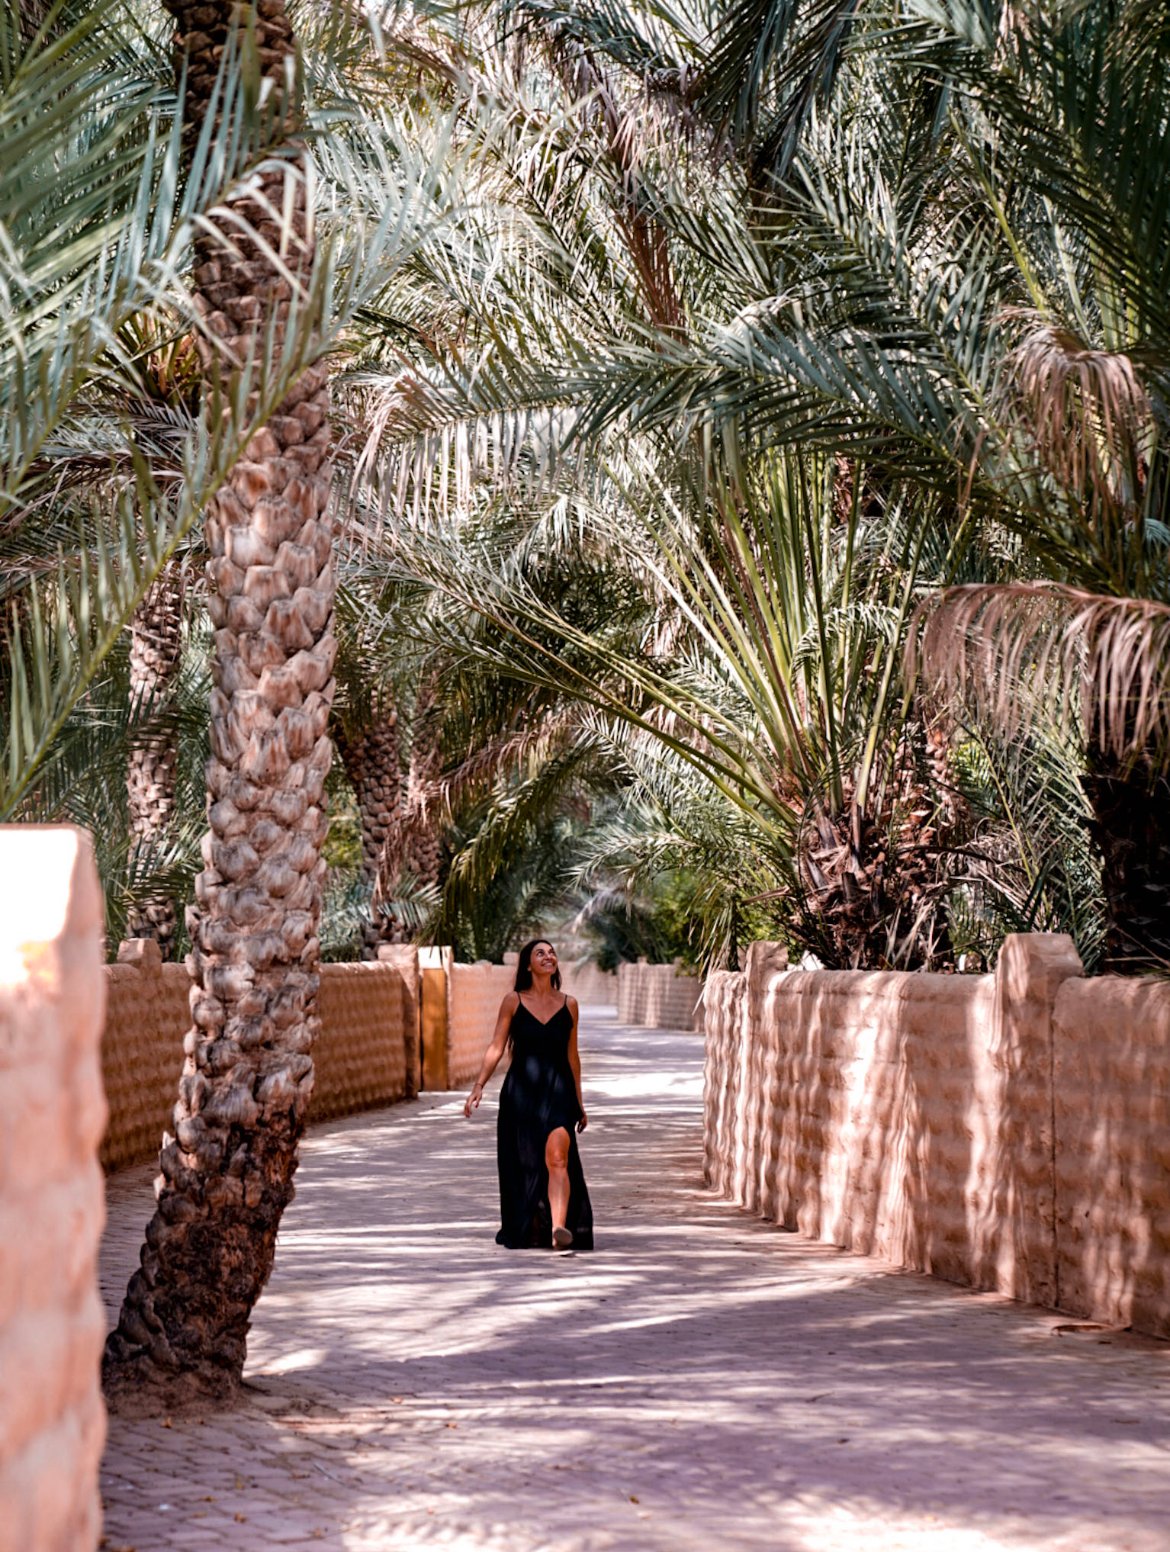 Al Ain Oasis, things to see in Abu Dhabi